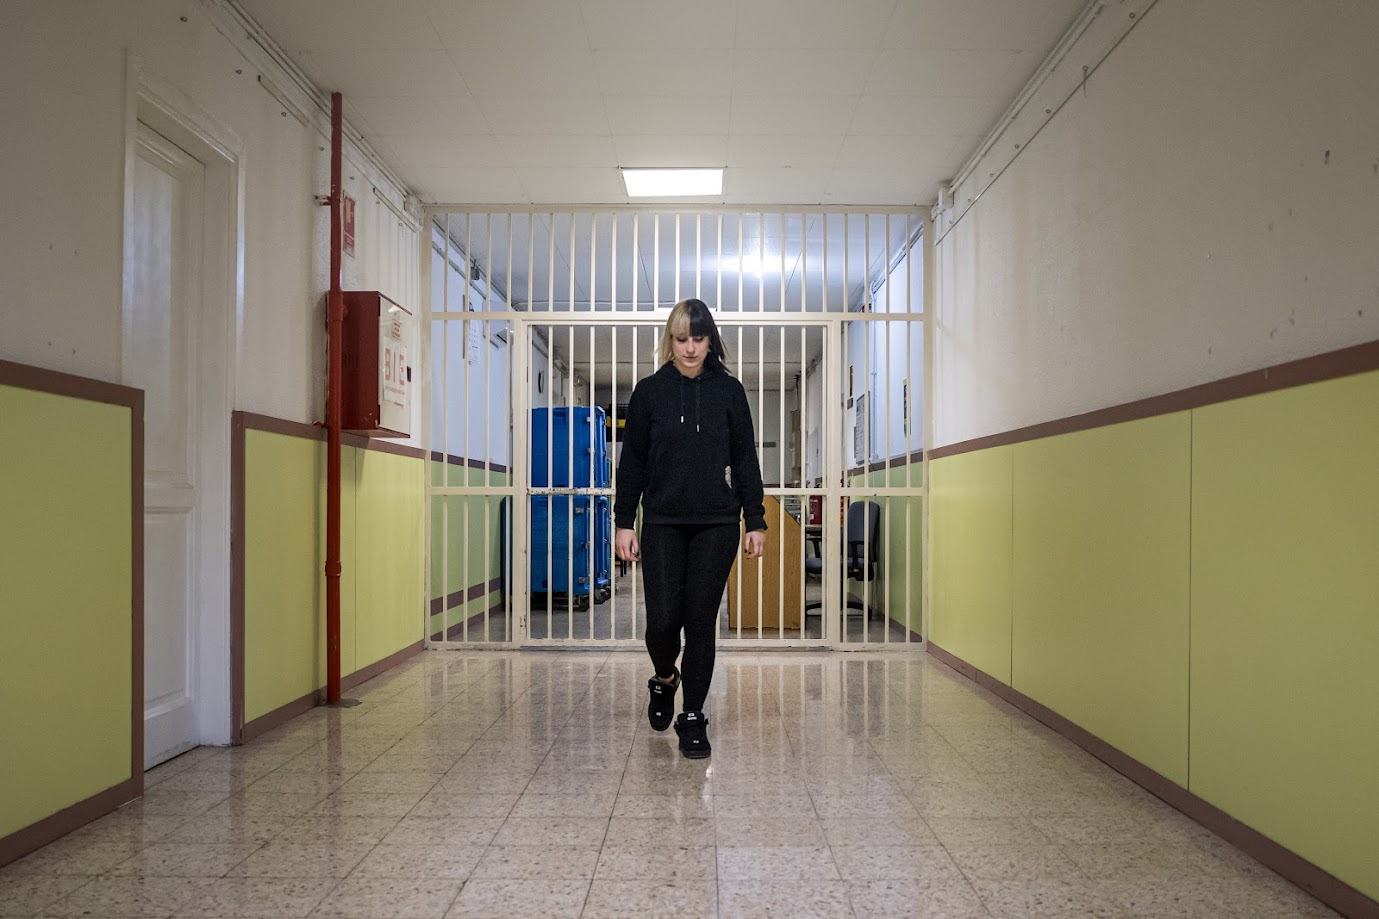 La presó de dones de Barcelona, la més antiga de l'Estat, compleix 40 anys i no tancarà fins al 2029